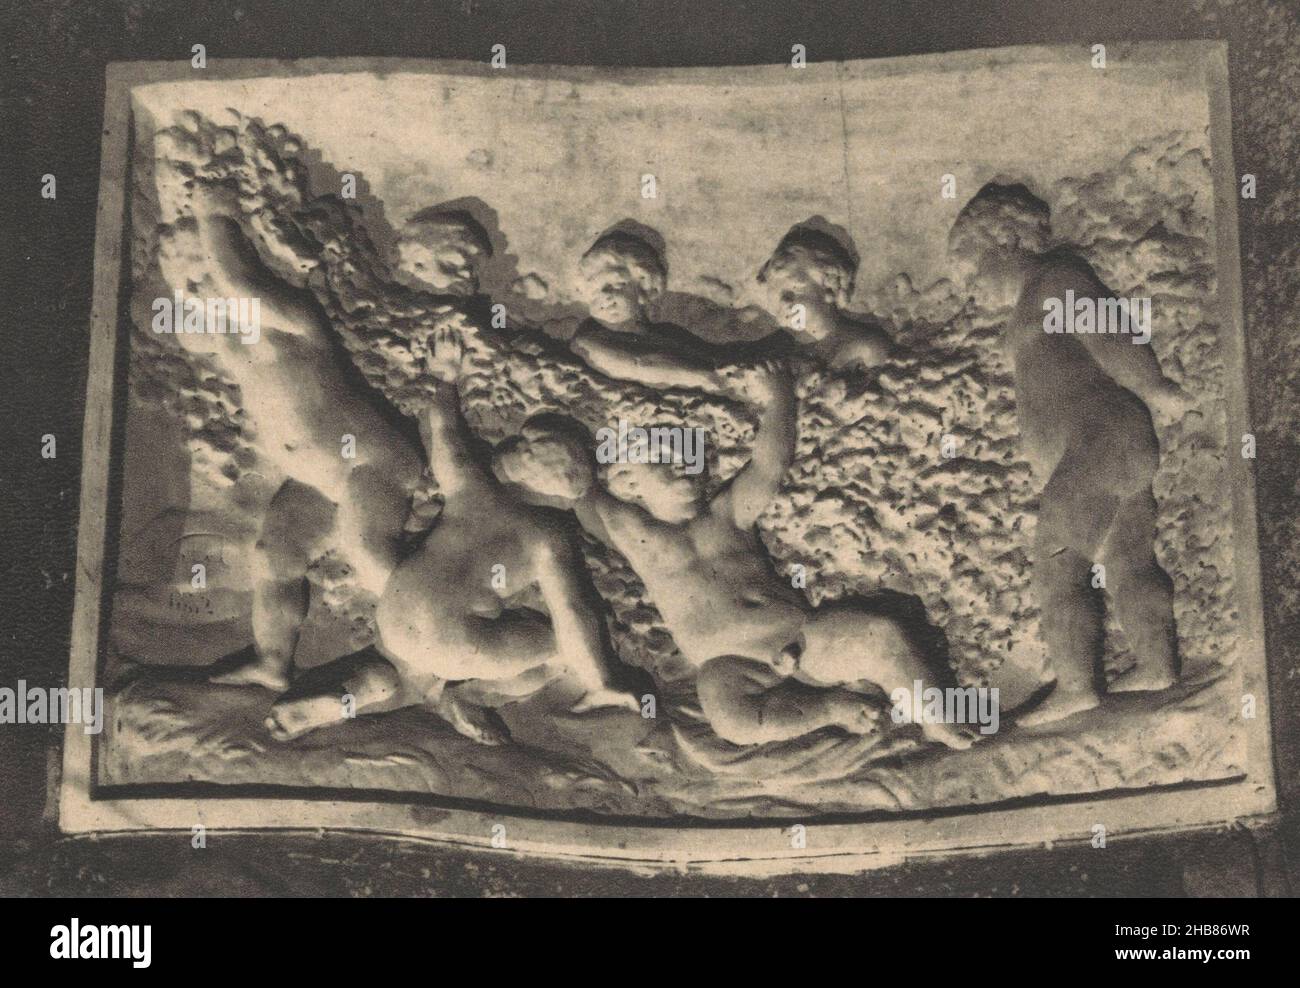 Jeunes maraudeurs, Bas-relief sculpté dans la craie (Titel auf Objekt), Hersteller: Helio-Cachan (auf Objekt erwähnt), 1930 - 1960, Papier, Höhe 101 mm × Breite 150 mm Stockfoto